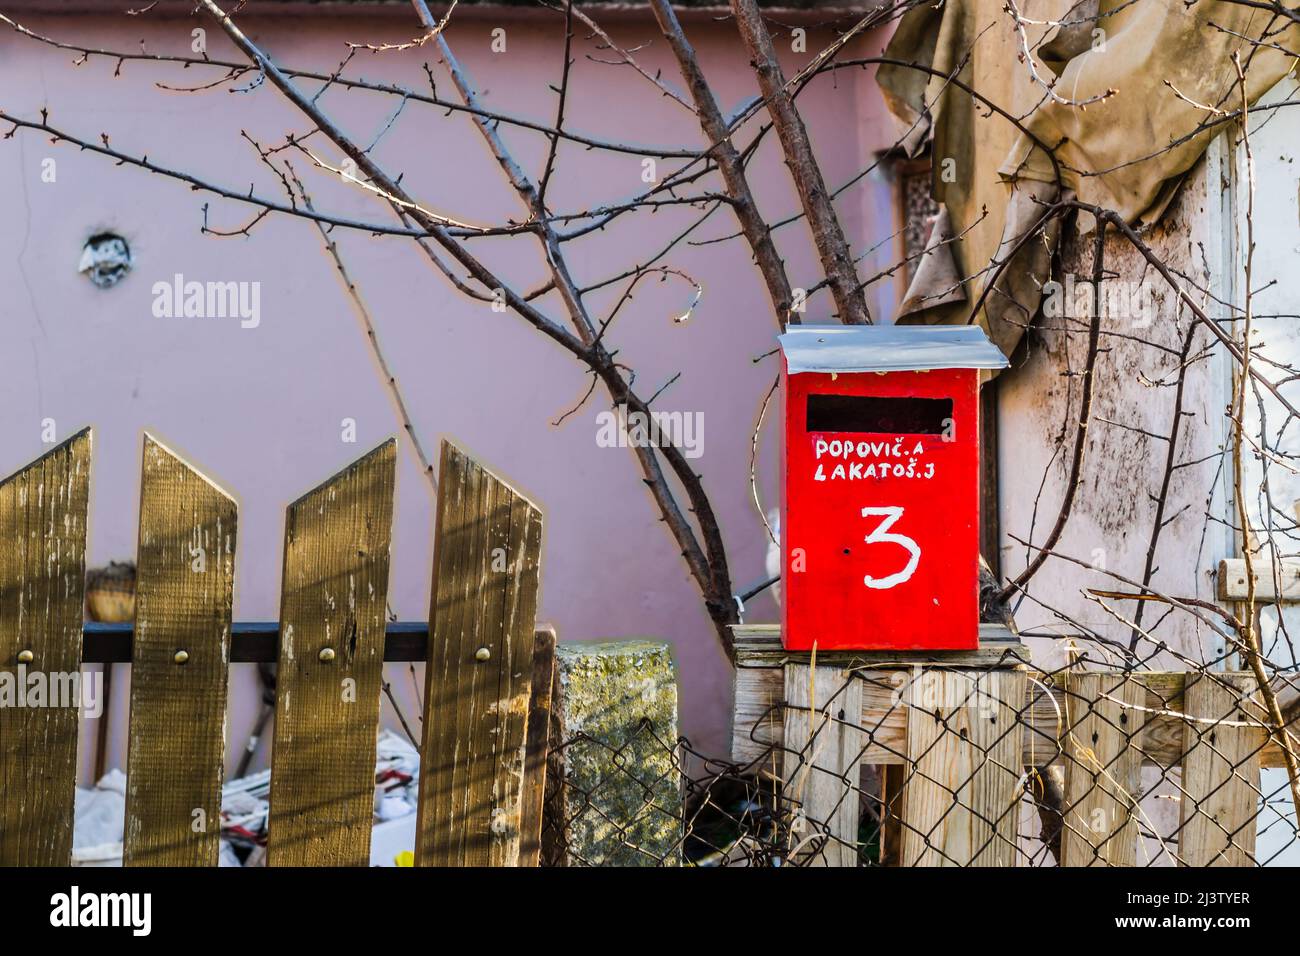 Boîte aux lettres rouge, avec lettres blanches, adresse écrite et numéro de maison sur une clôture en bois. Banque D'Images